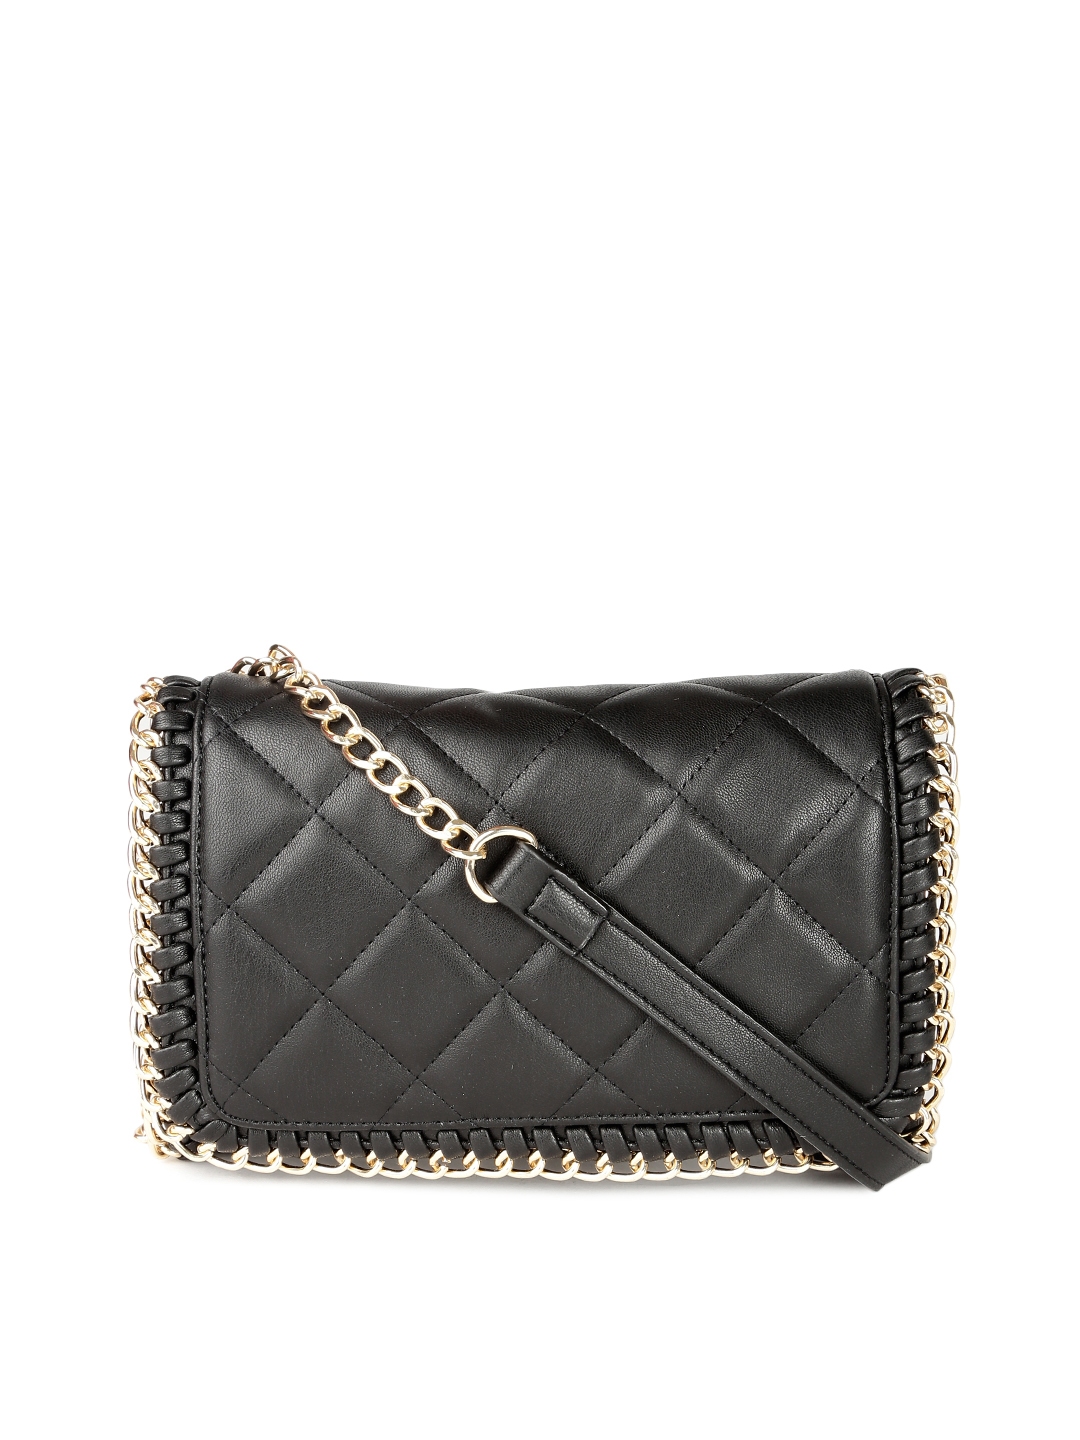 Buy FOREVER 21 Black Solid Sling Bag - Handbags for Women 2404451 | Myntra